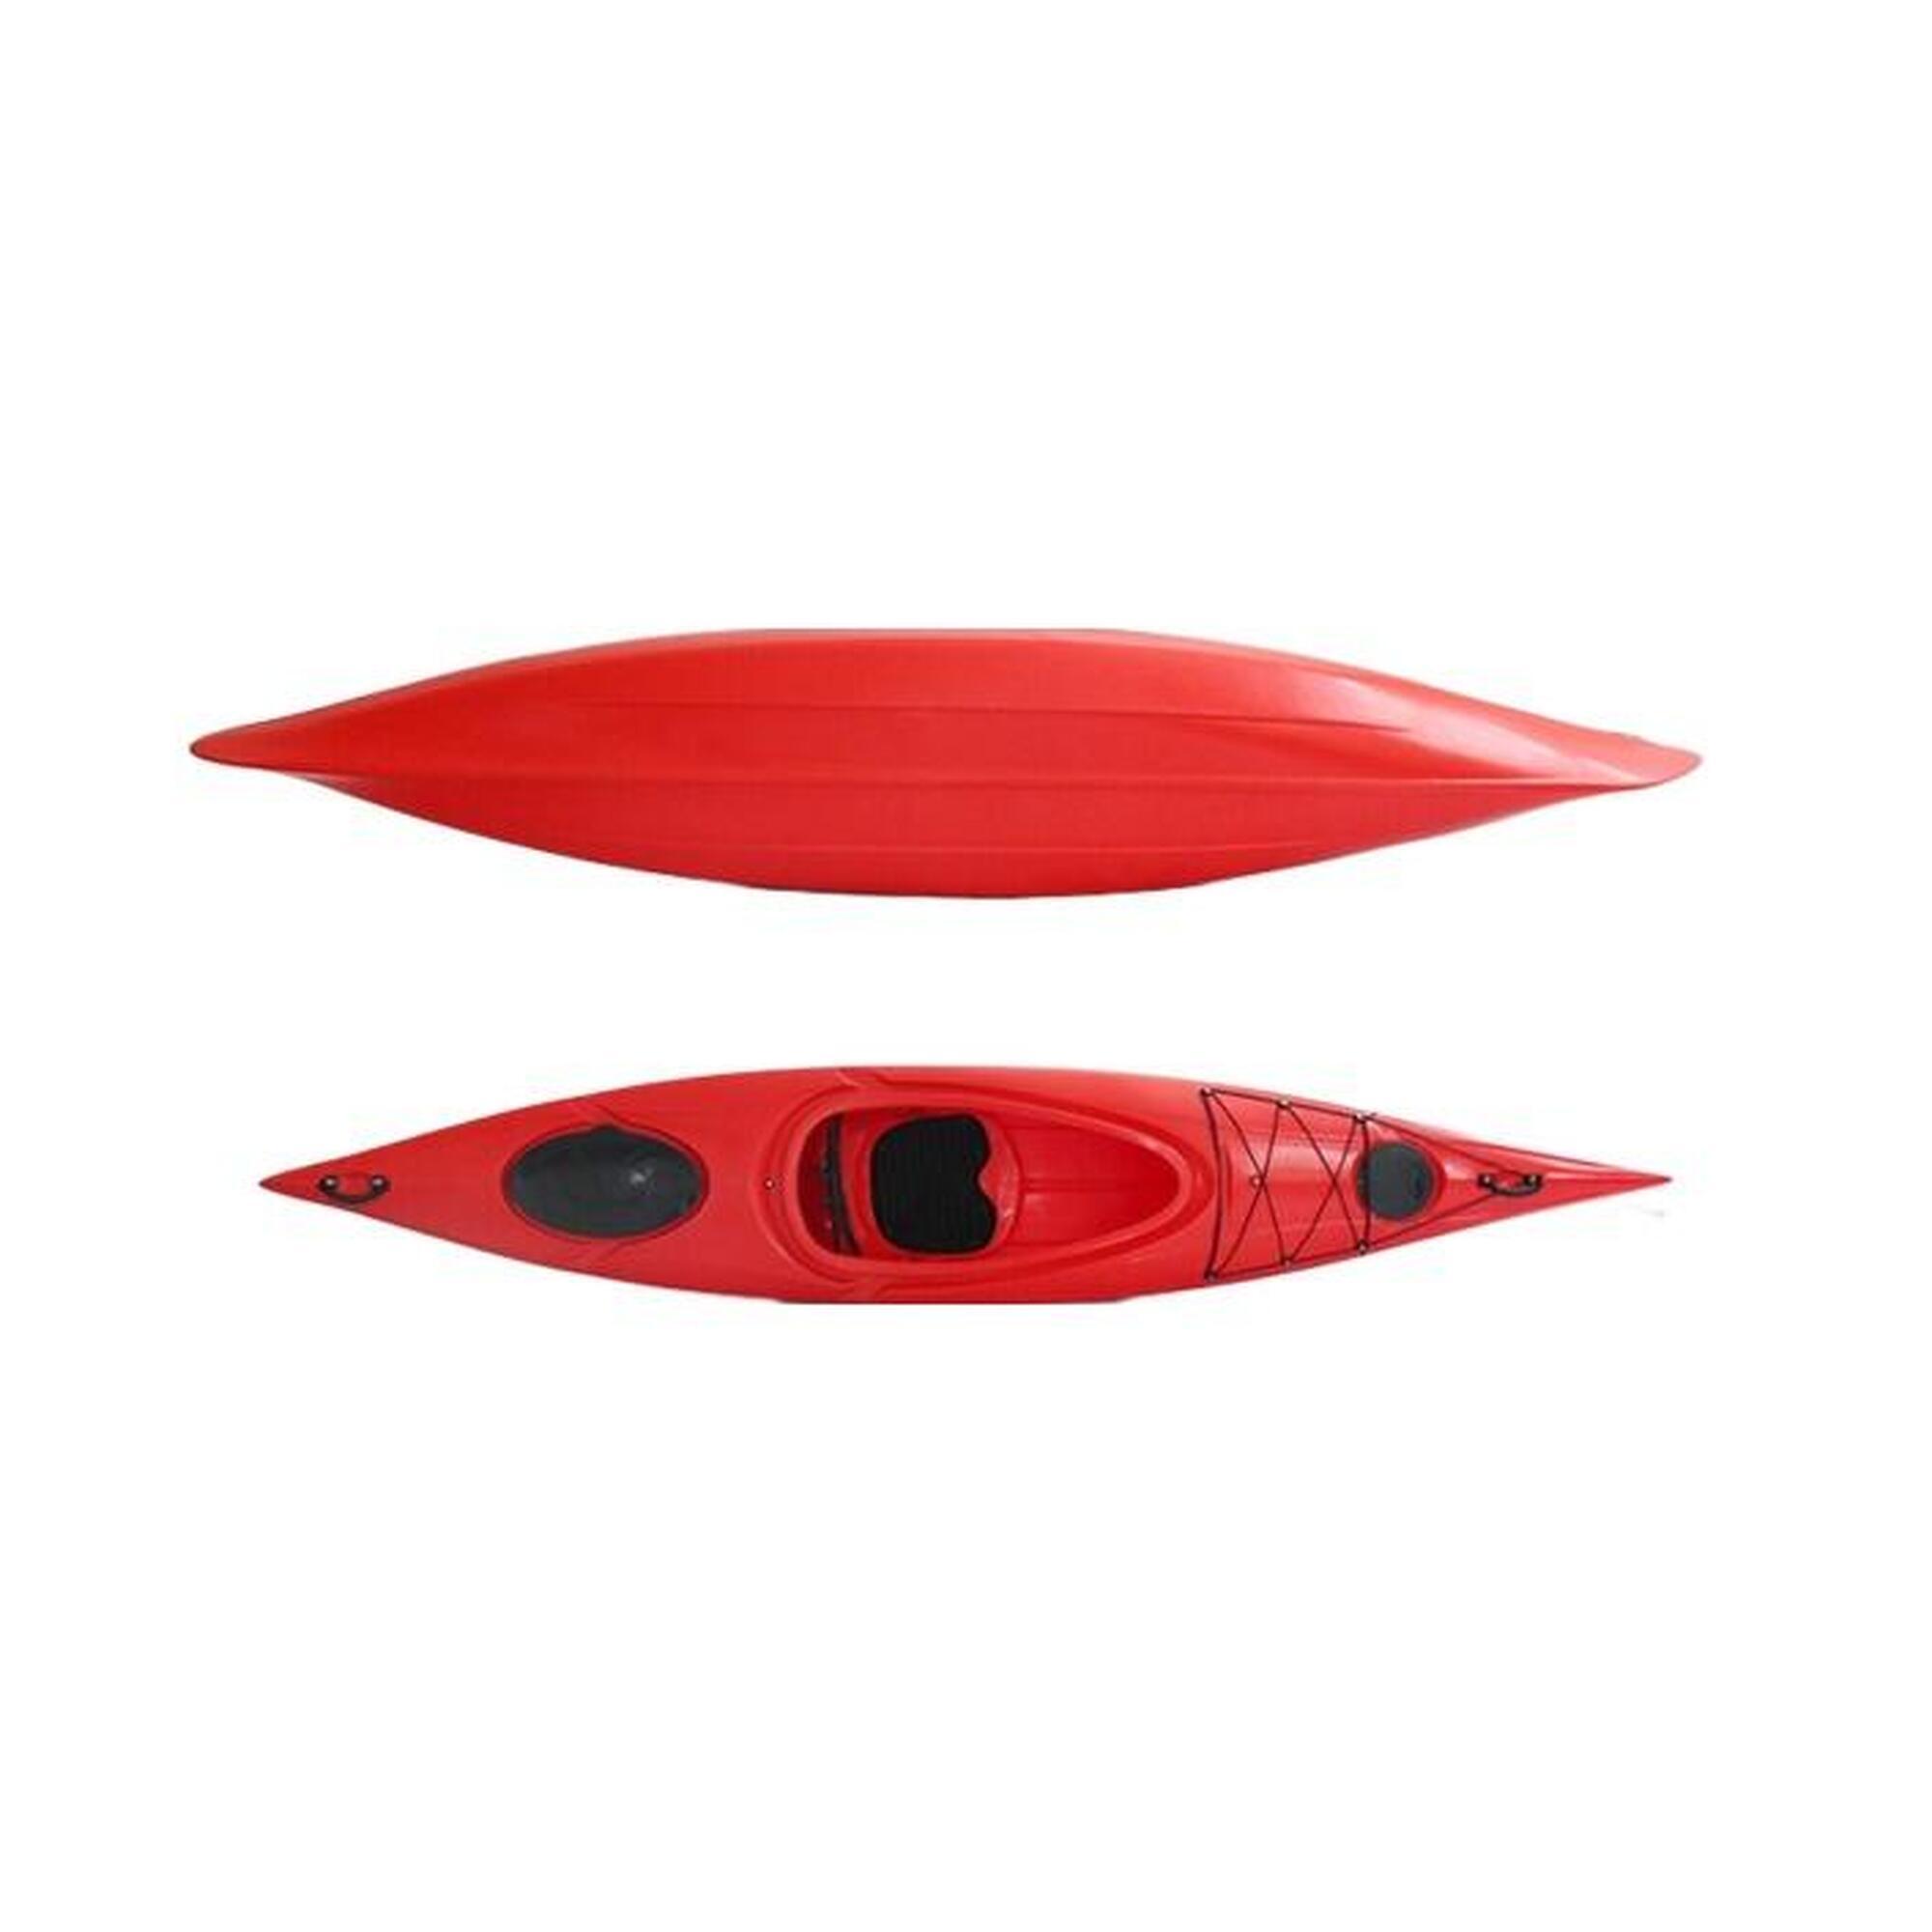 3.6米單人硬底坐入式獨木舟連槳 - 紅色